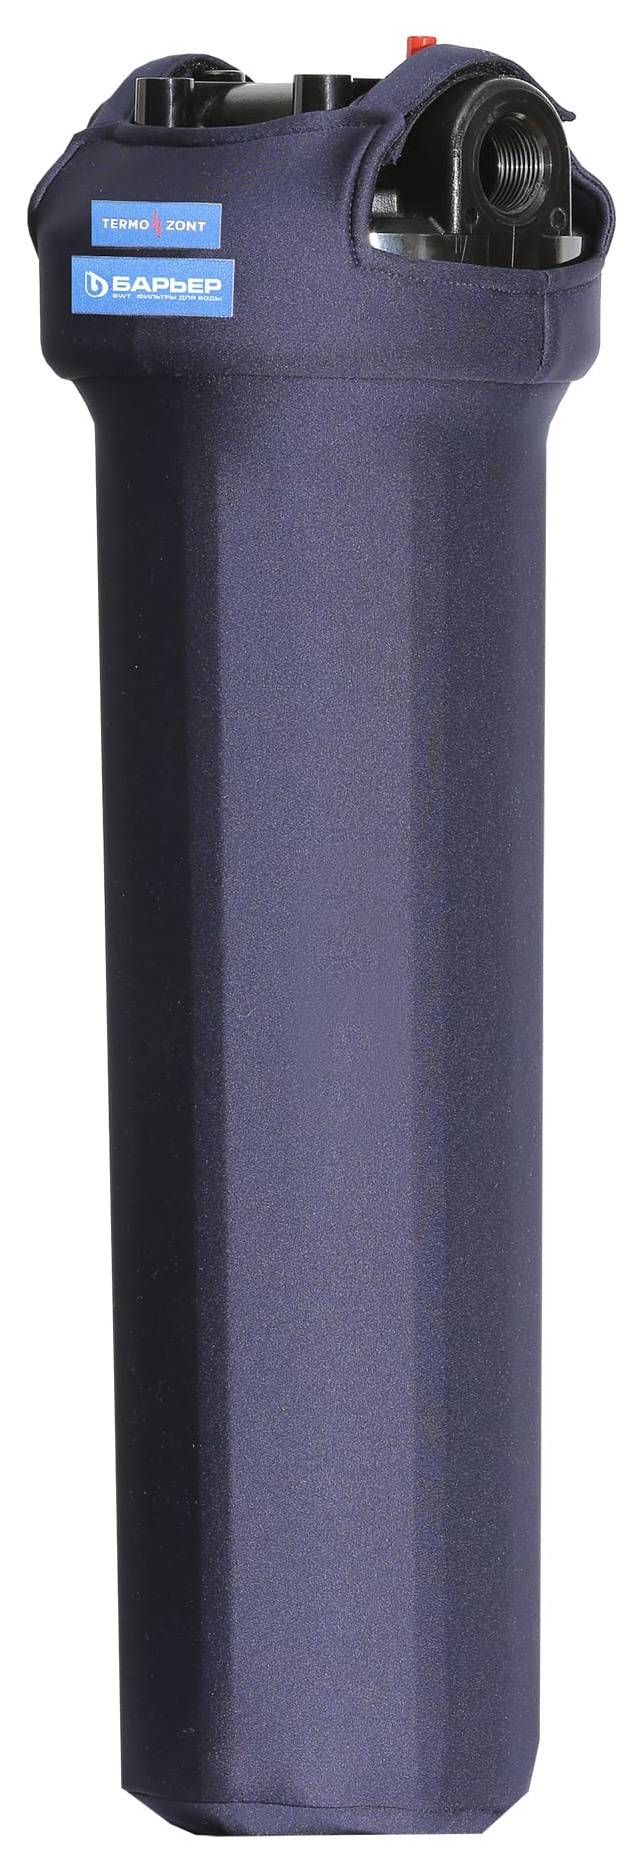 Термозащита для фильтров Барьер BB 2050 (а270р03)